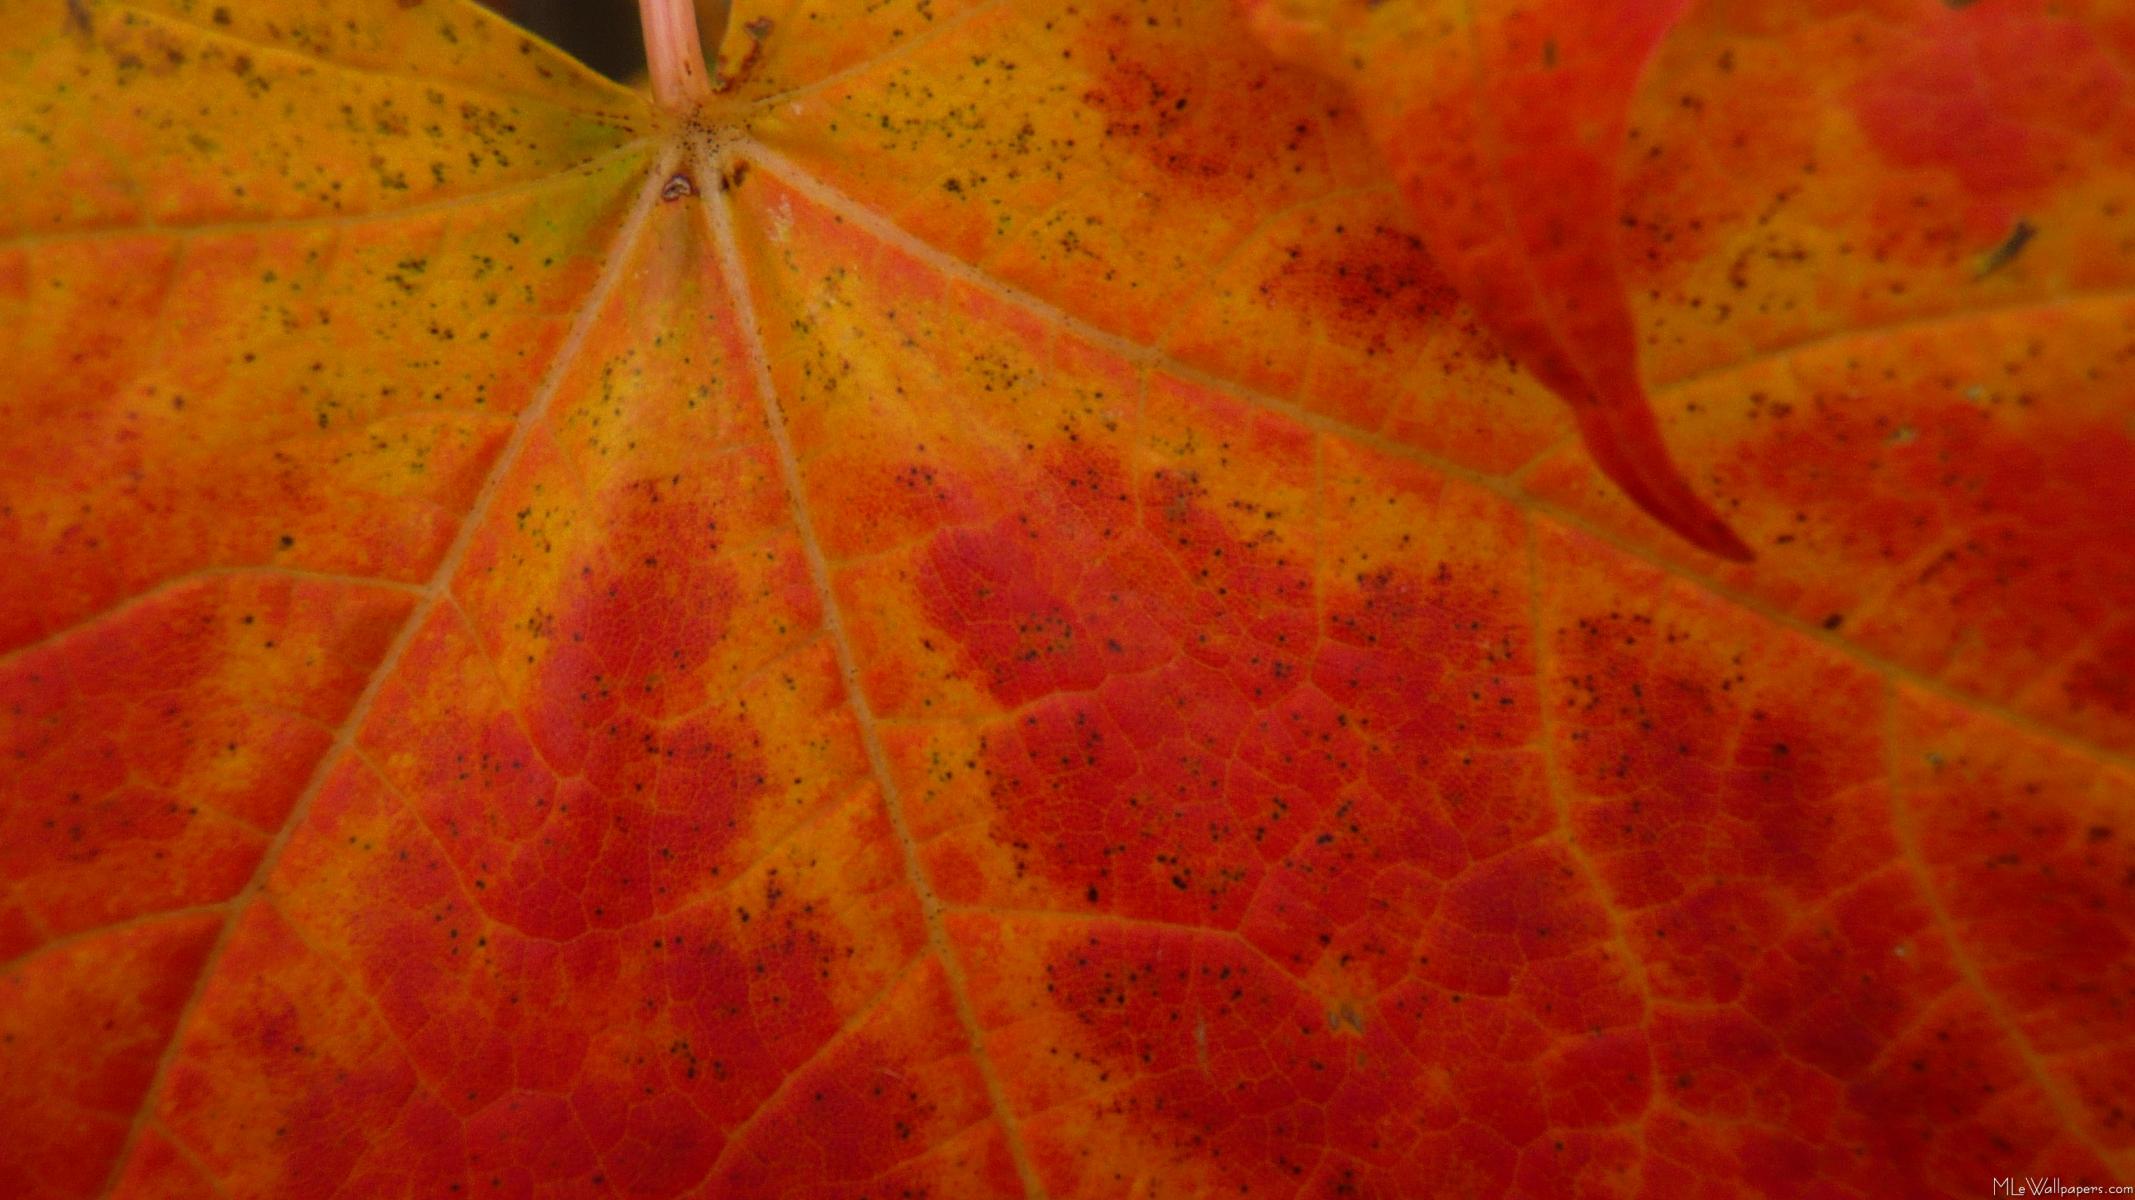 falling maple leaf wallpaper